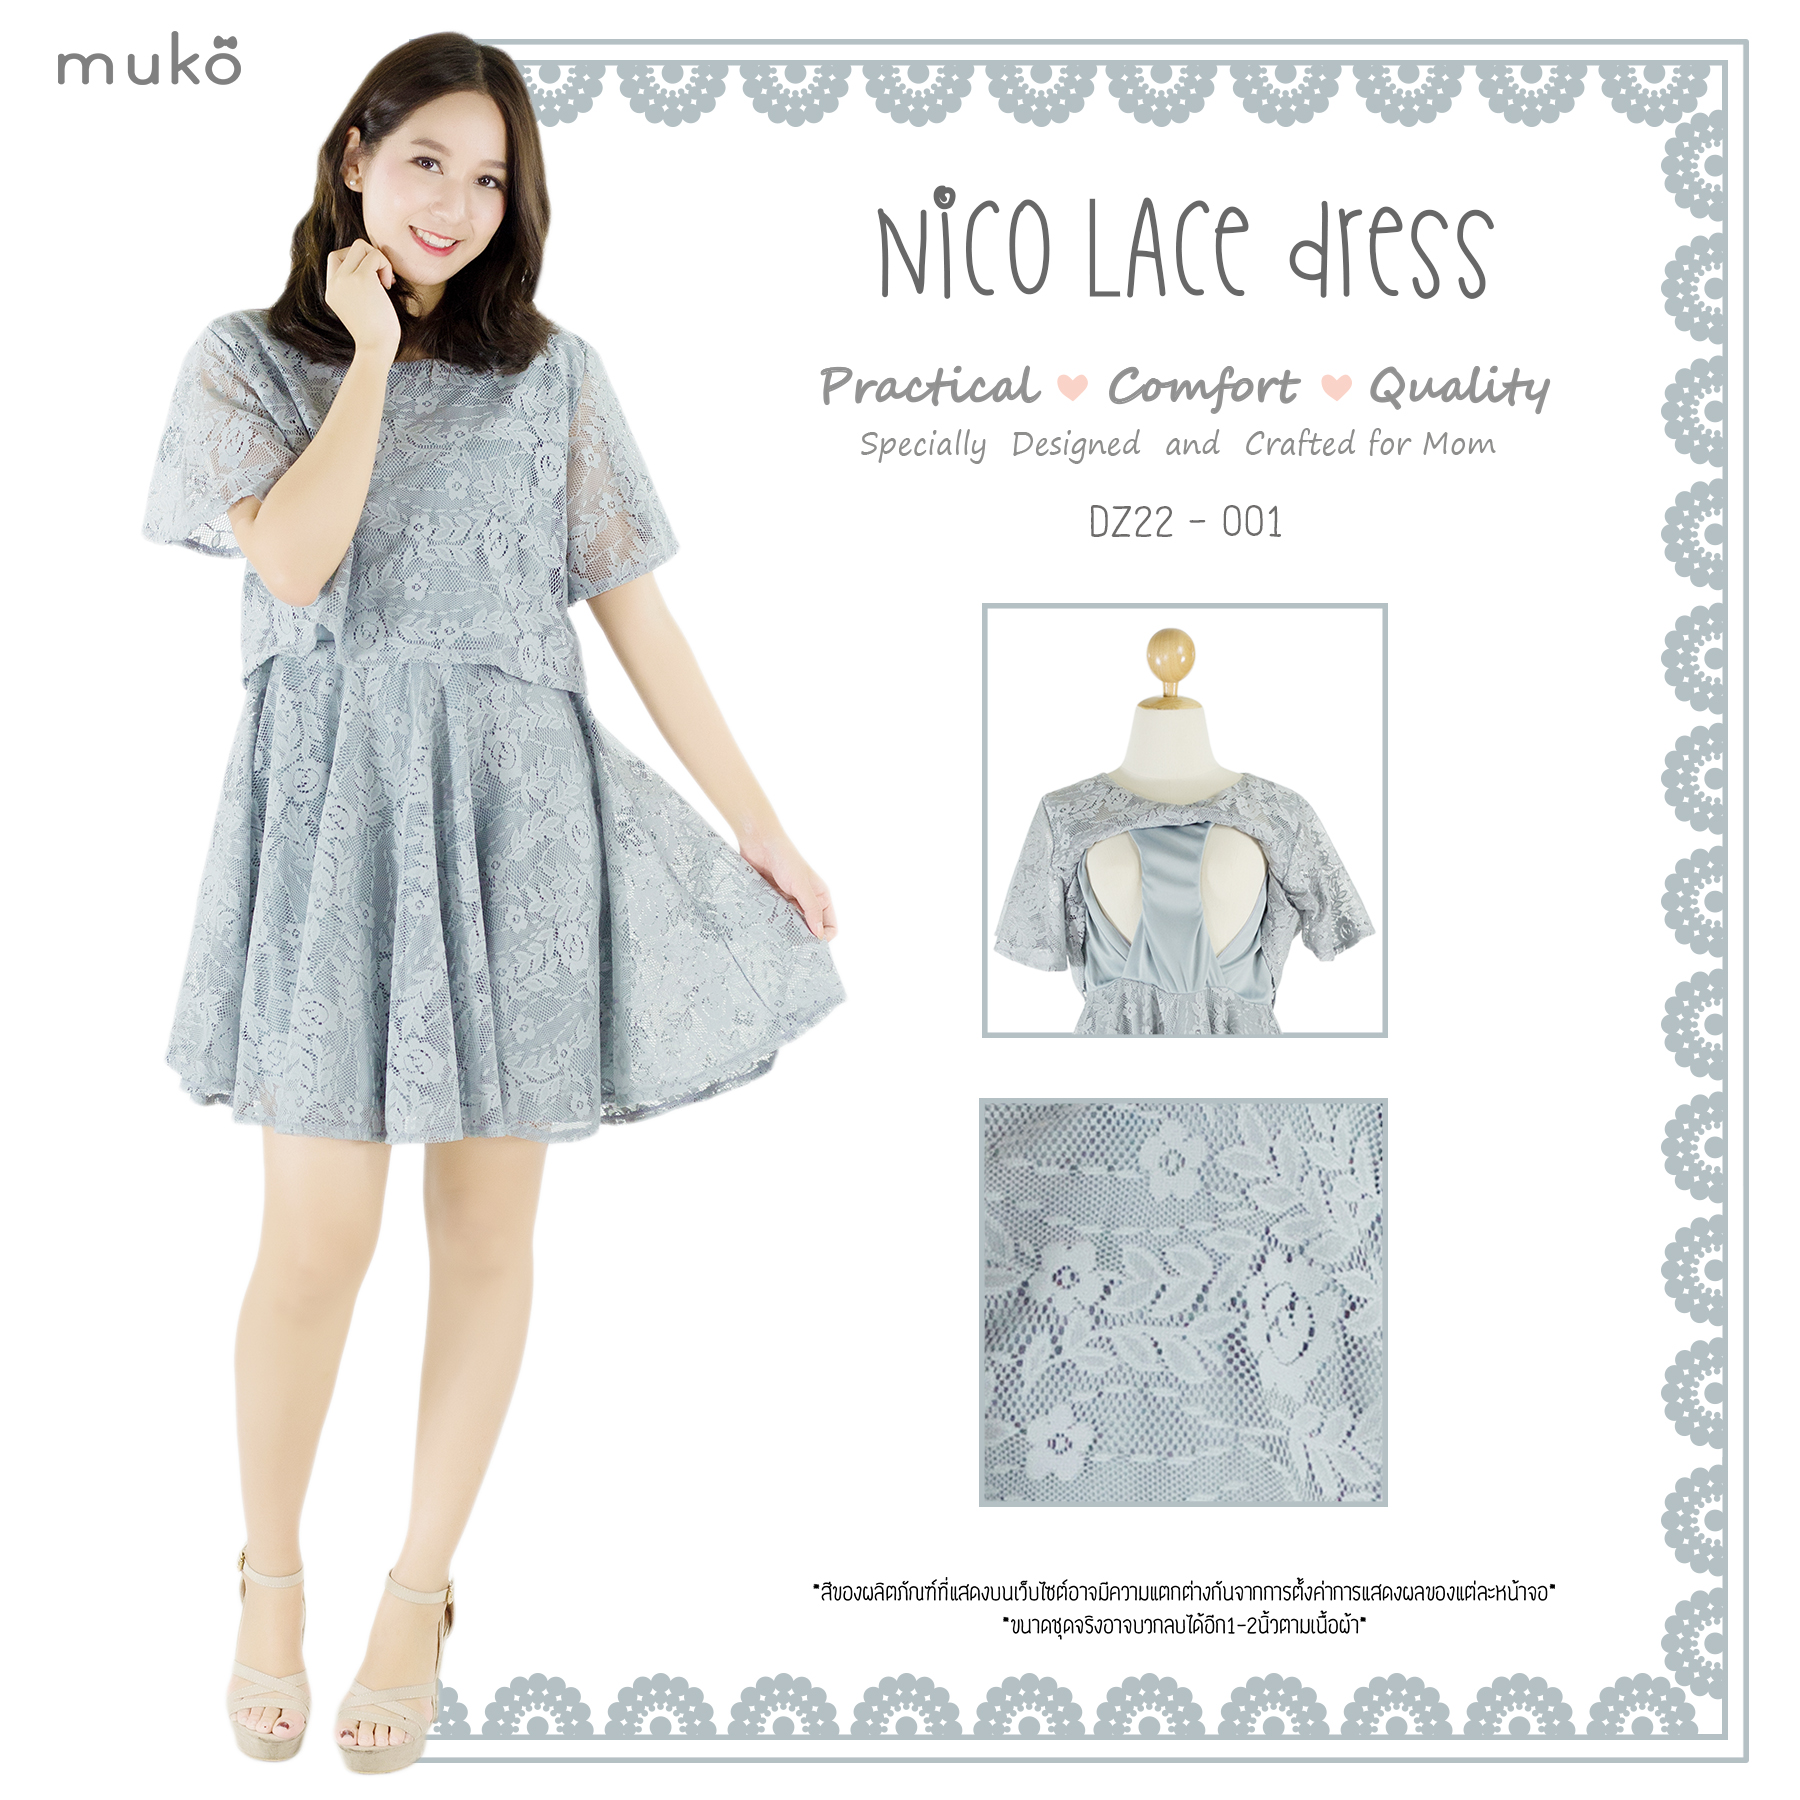 Muko Nico Lace Dress เดรสคลุมท้อง เปิดให้นม DZ22-001 เทาอ่อน